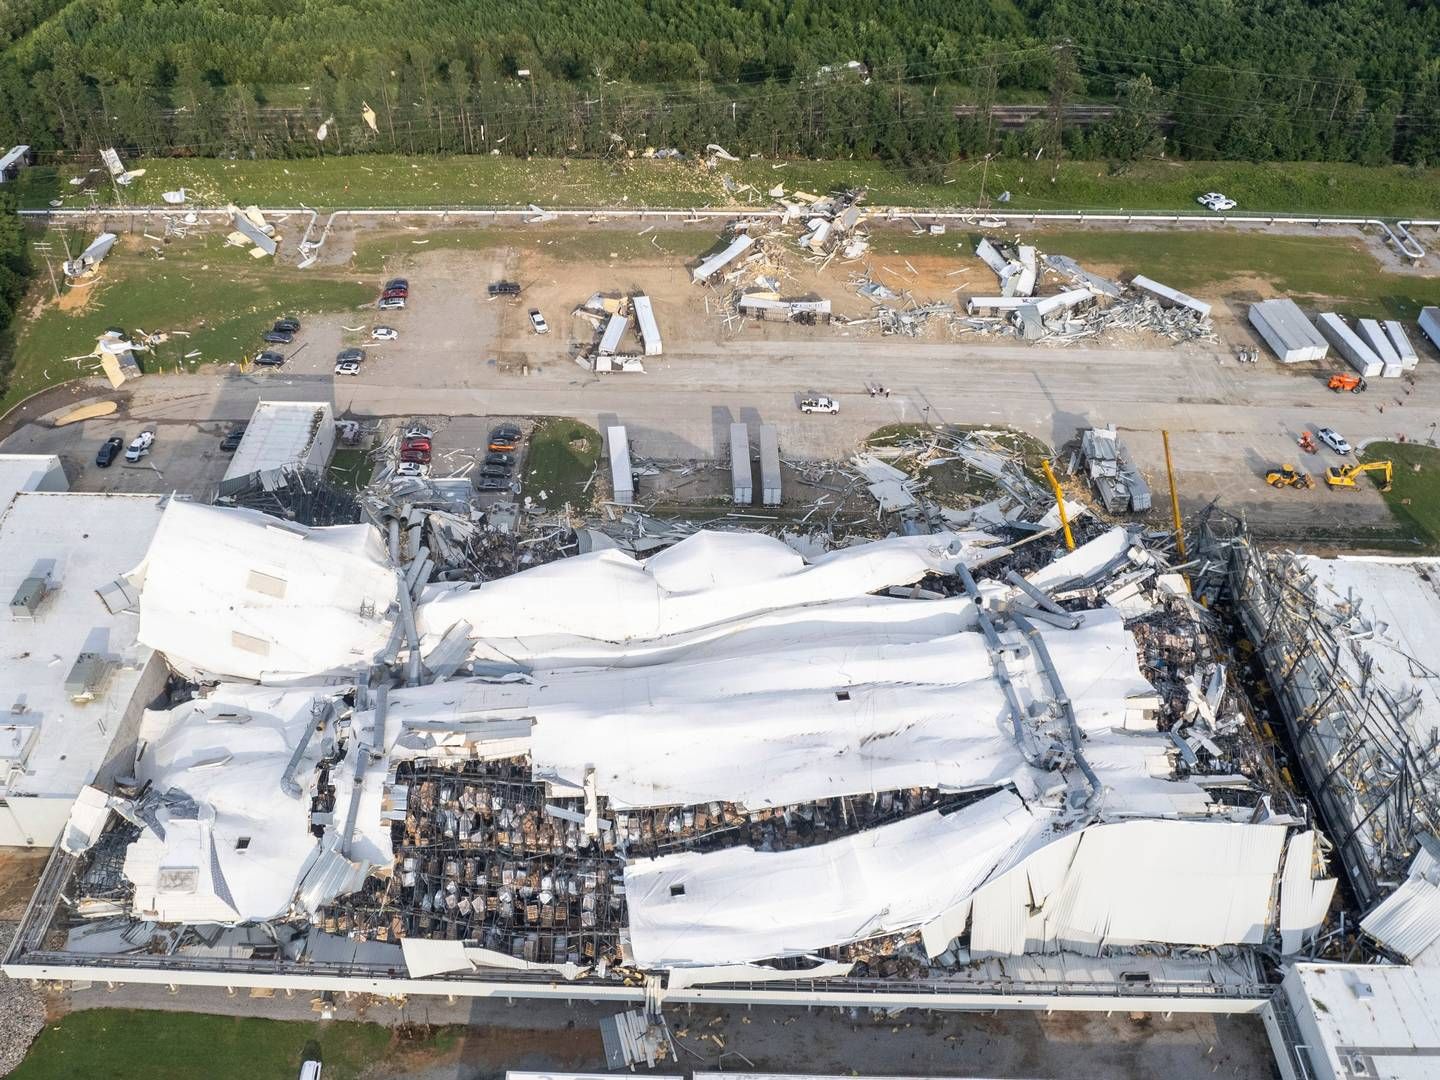 SEKSTI: 60 ansatte i Pfizer mistet jobben ved dette anlegget i Rocky Mount, som ble rammet av en tornado i juli i fjor. | Foto: Travis Long/The News & Observer via AP/NTB